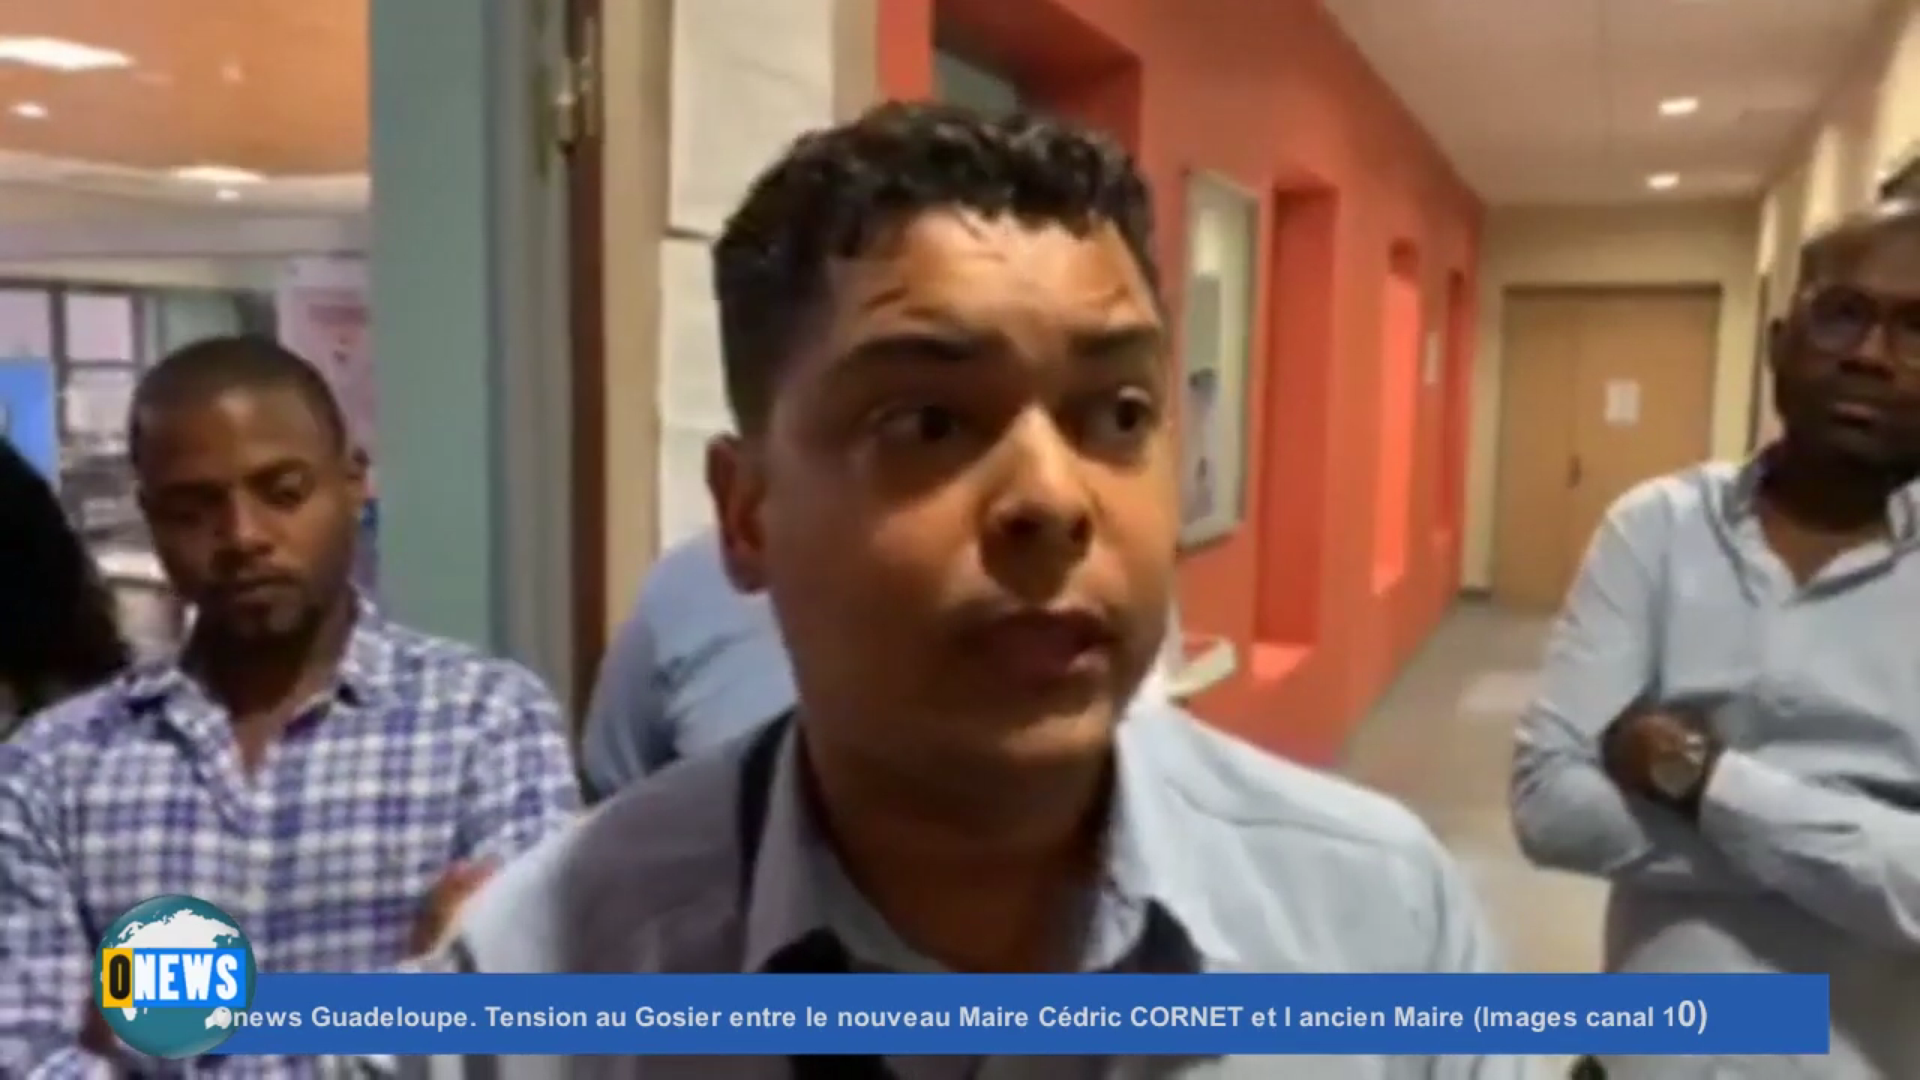 [Vidéo] Onews Guadeloupe. Tension au Gosier entre le nouveau Maire Cédric CORNET et l ancien Maire